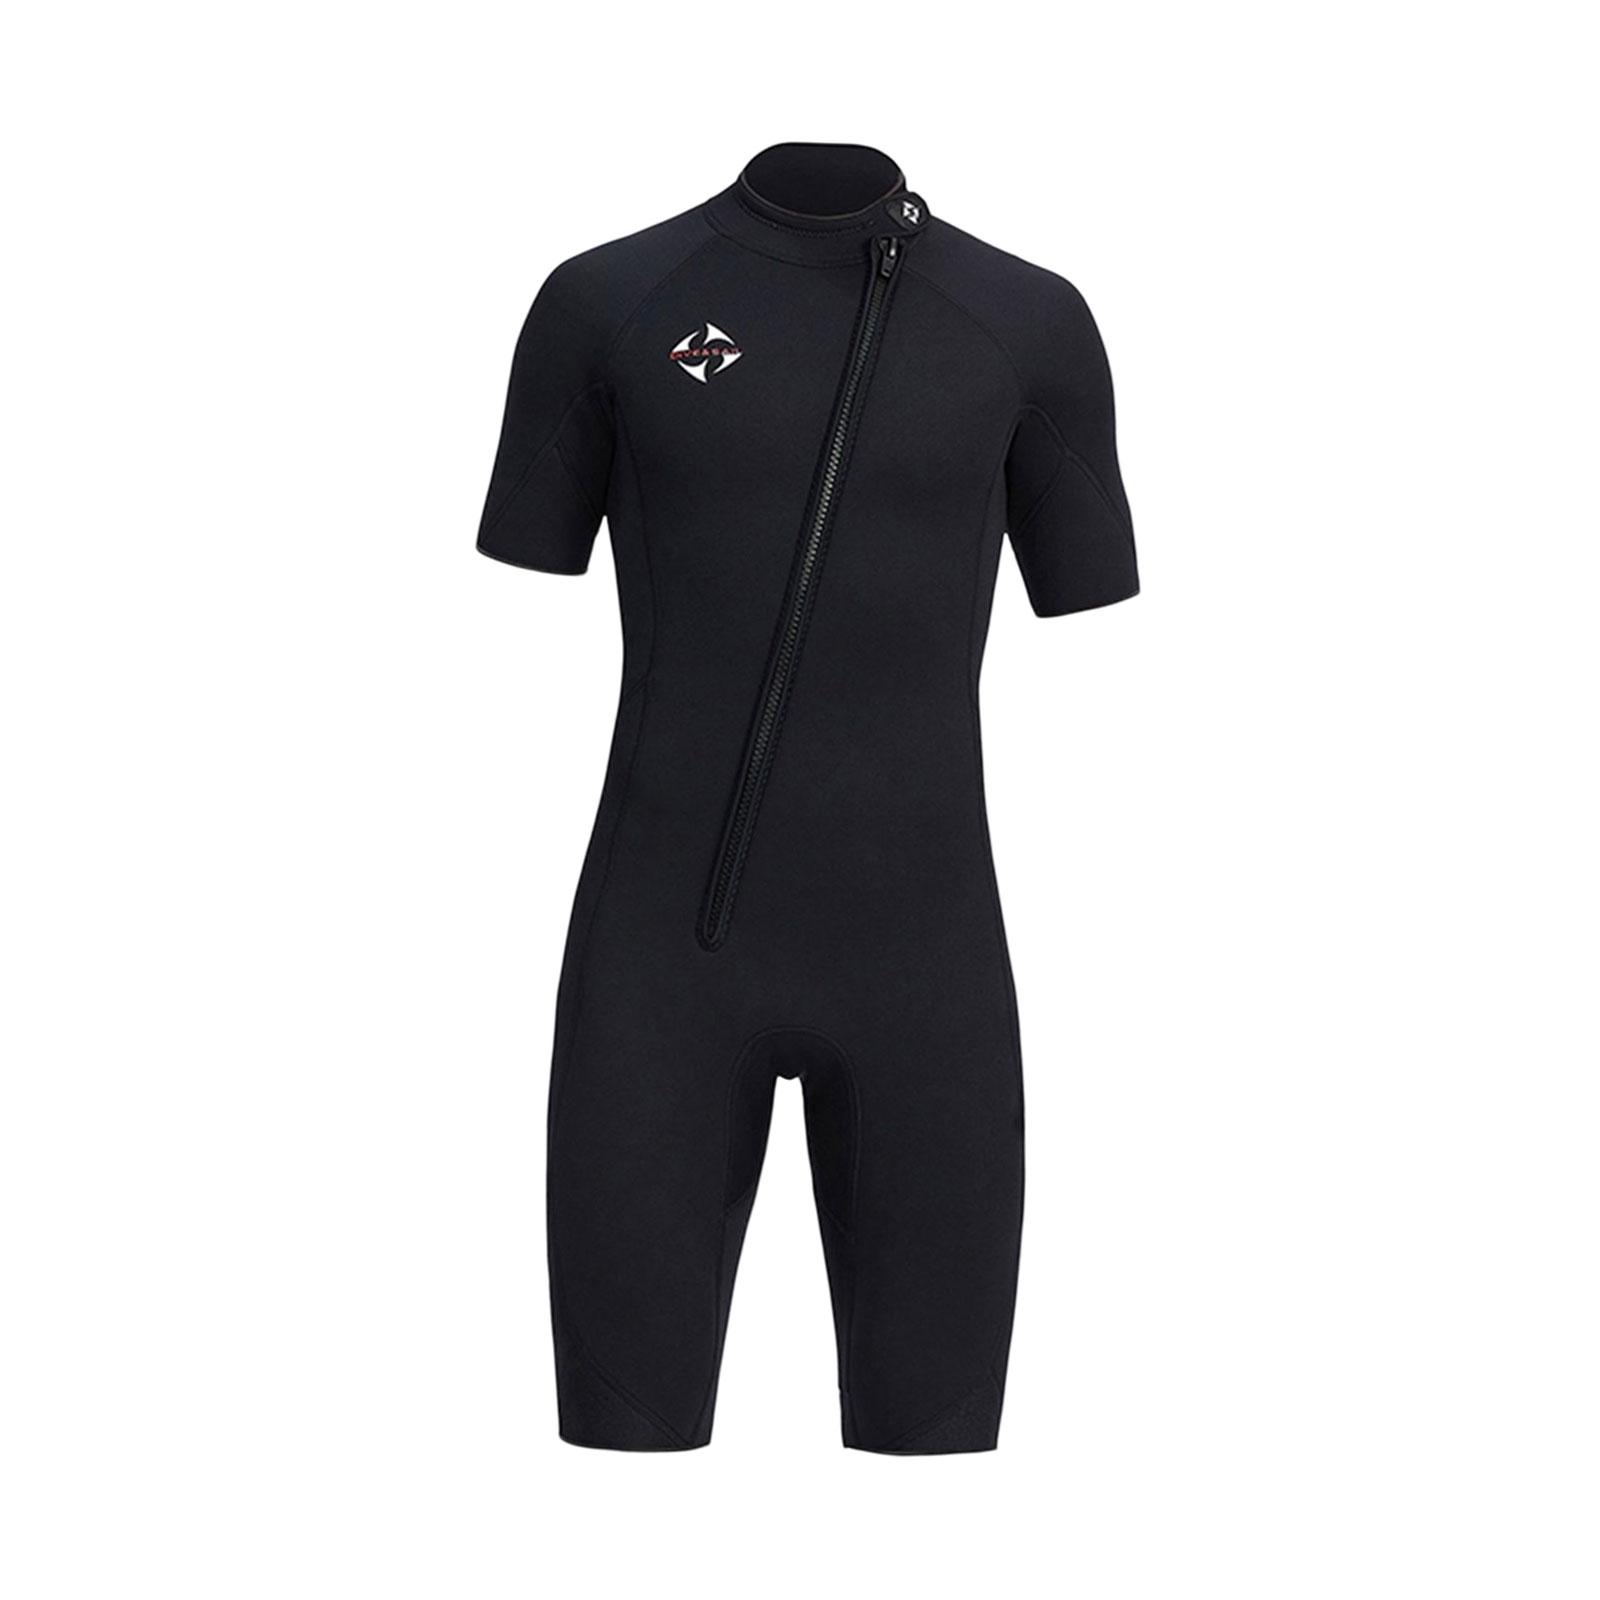 lifestyling2020 Men Wetsuit Scuba Diving Suit Wet Suit for Water Sports